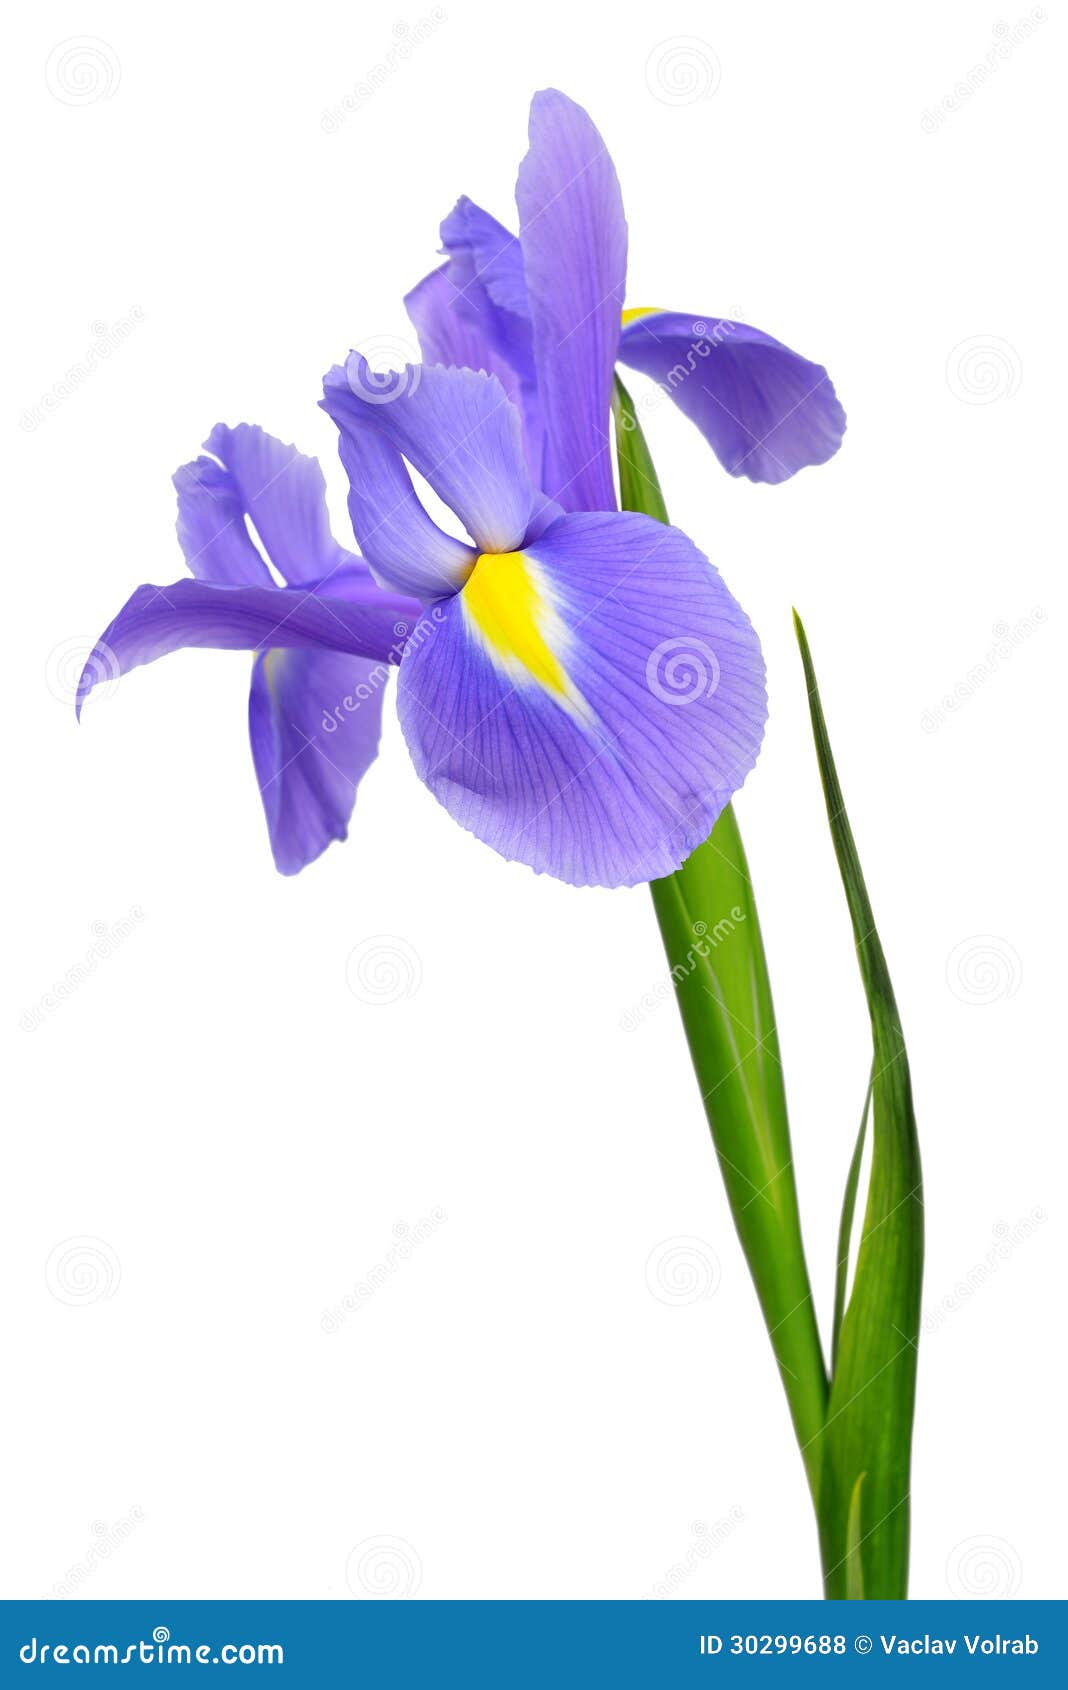 Purple iris flower stock photo. Image of dark, blossoming   20